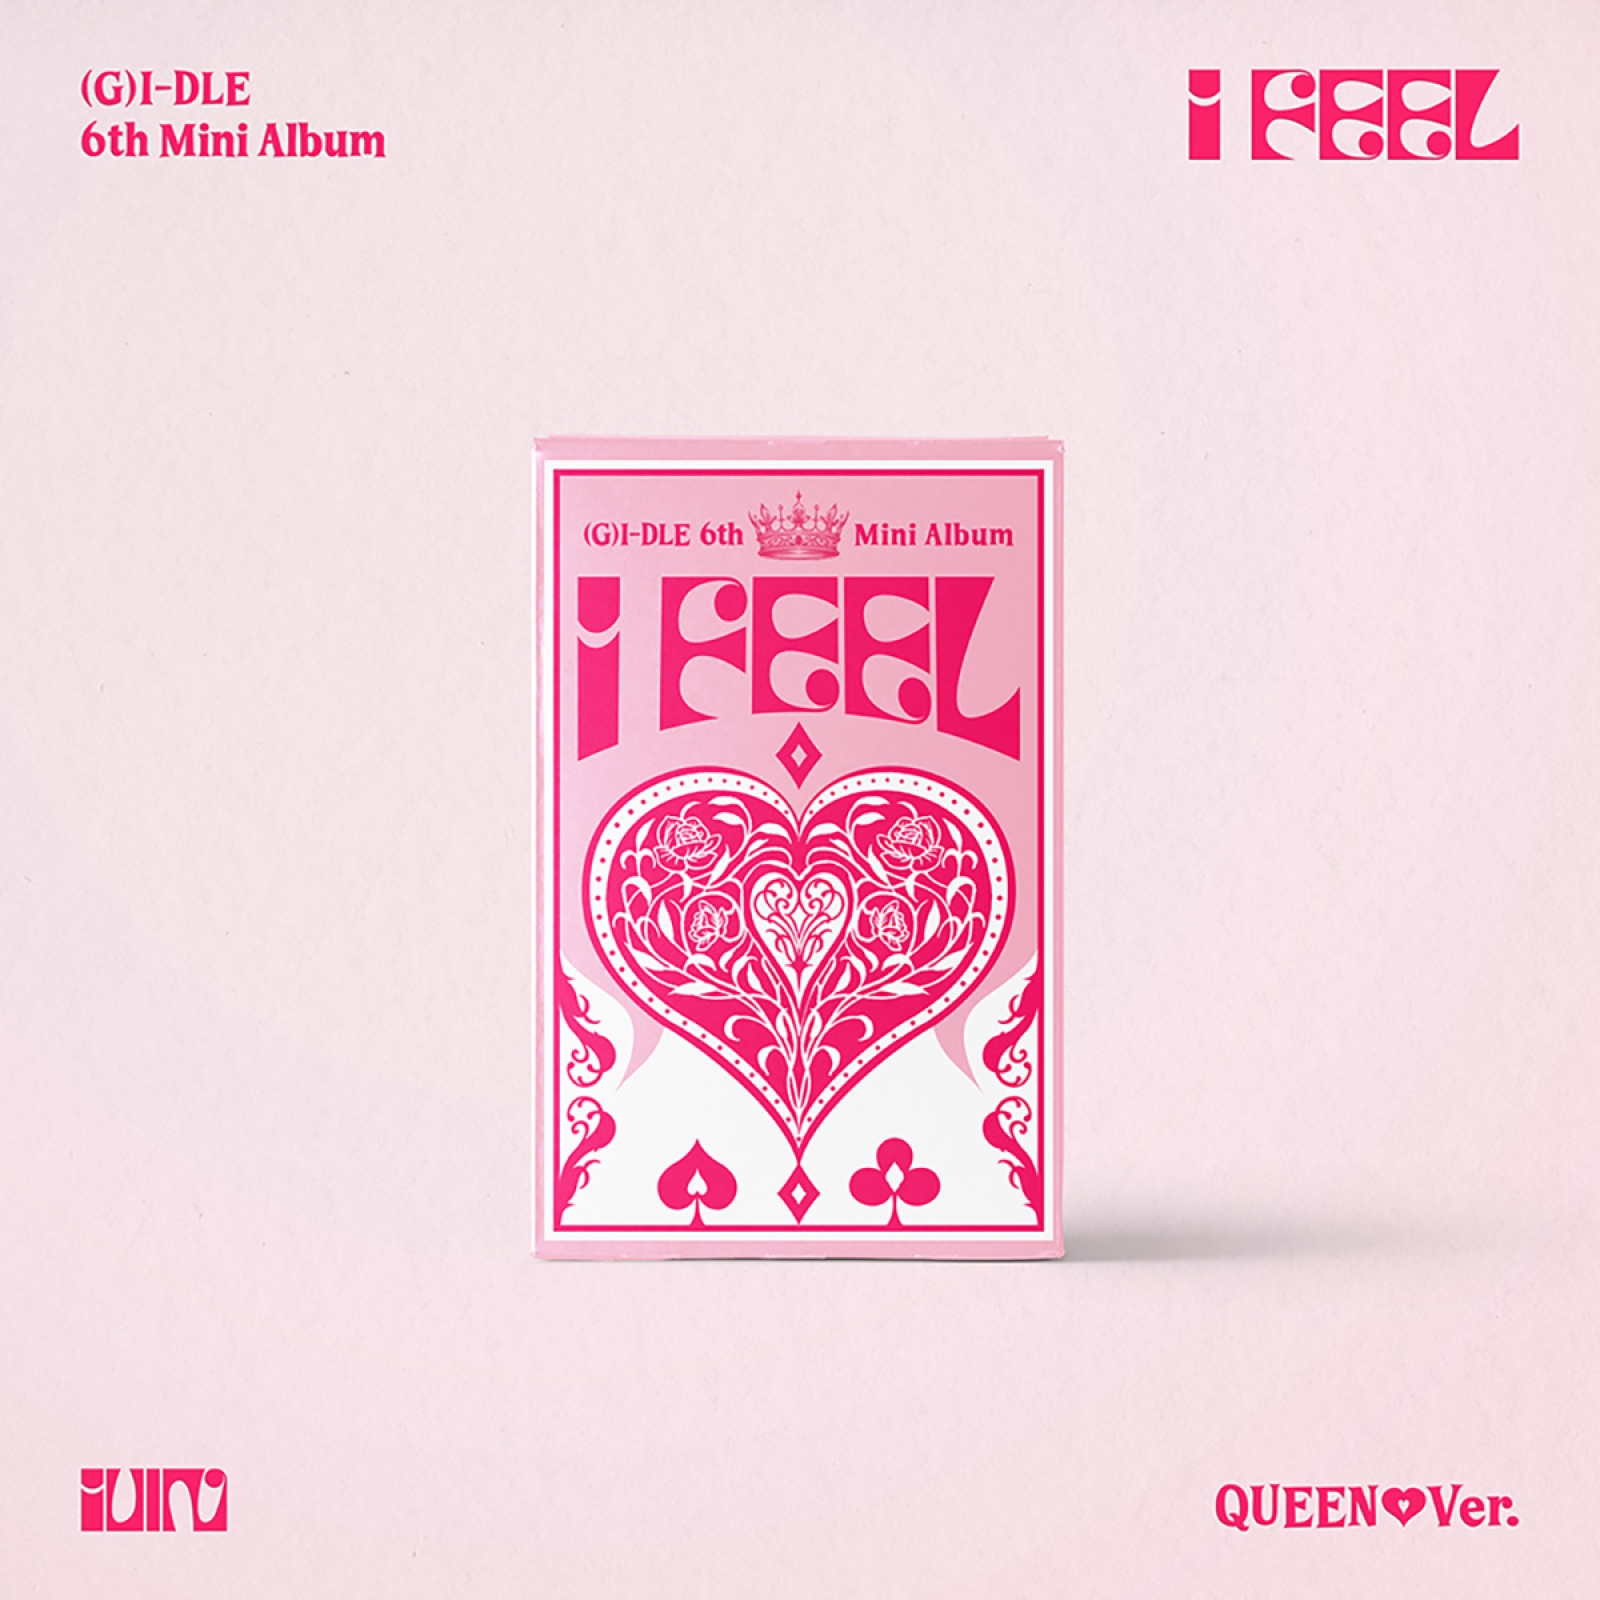 (G)I-DLE - I feel / 6TH MINI ALBUM (Queen Ver.)